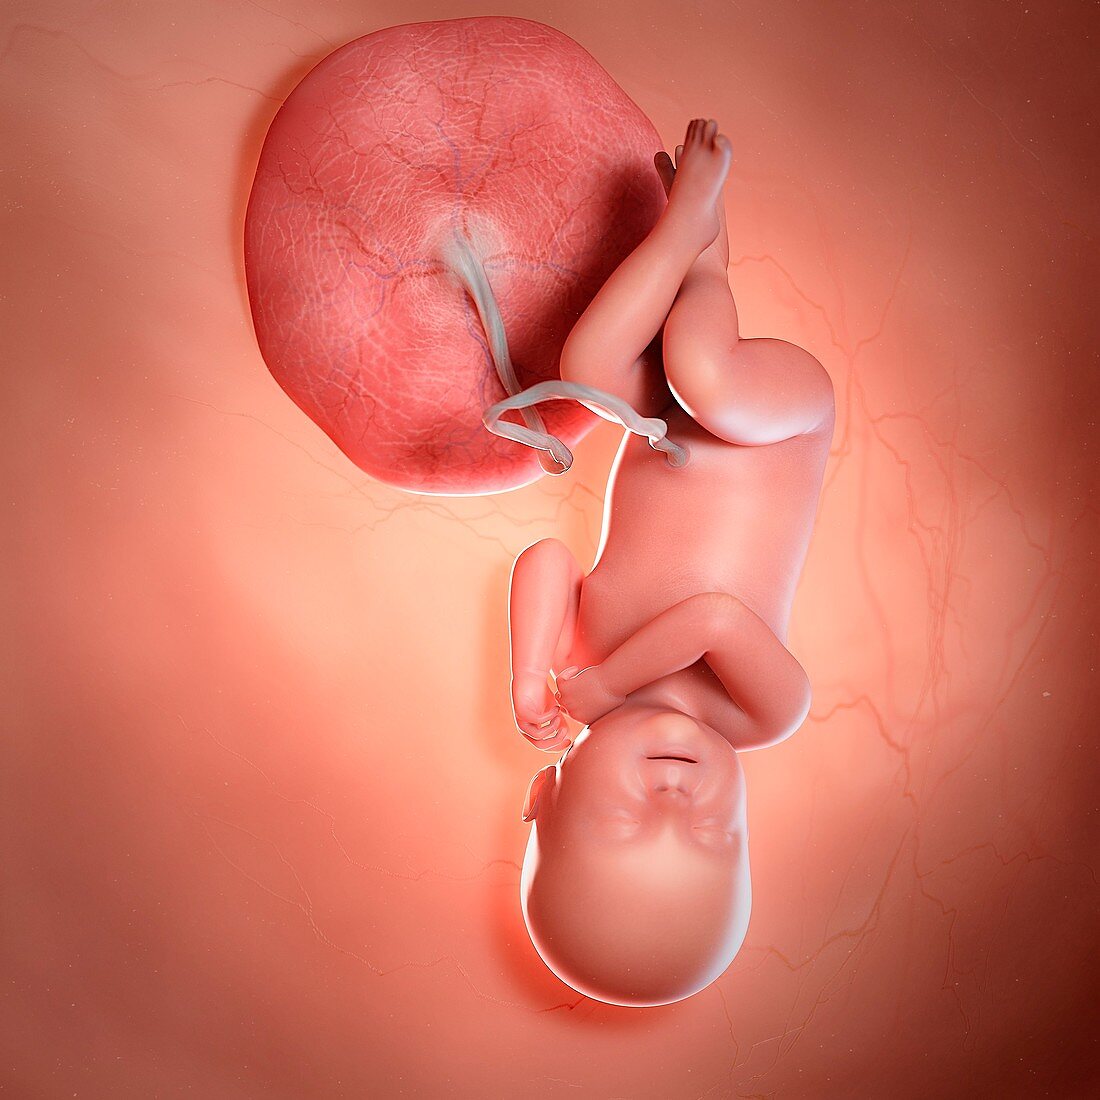 Human foetus age 40 weeks, illustration